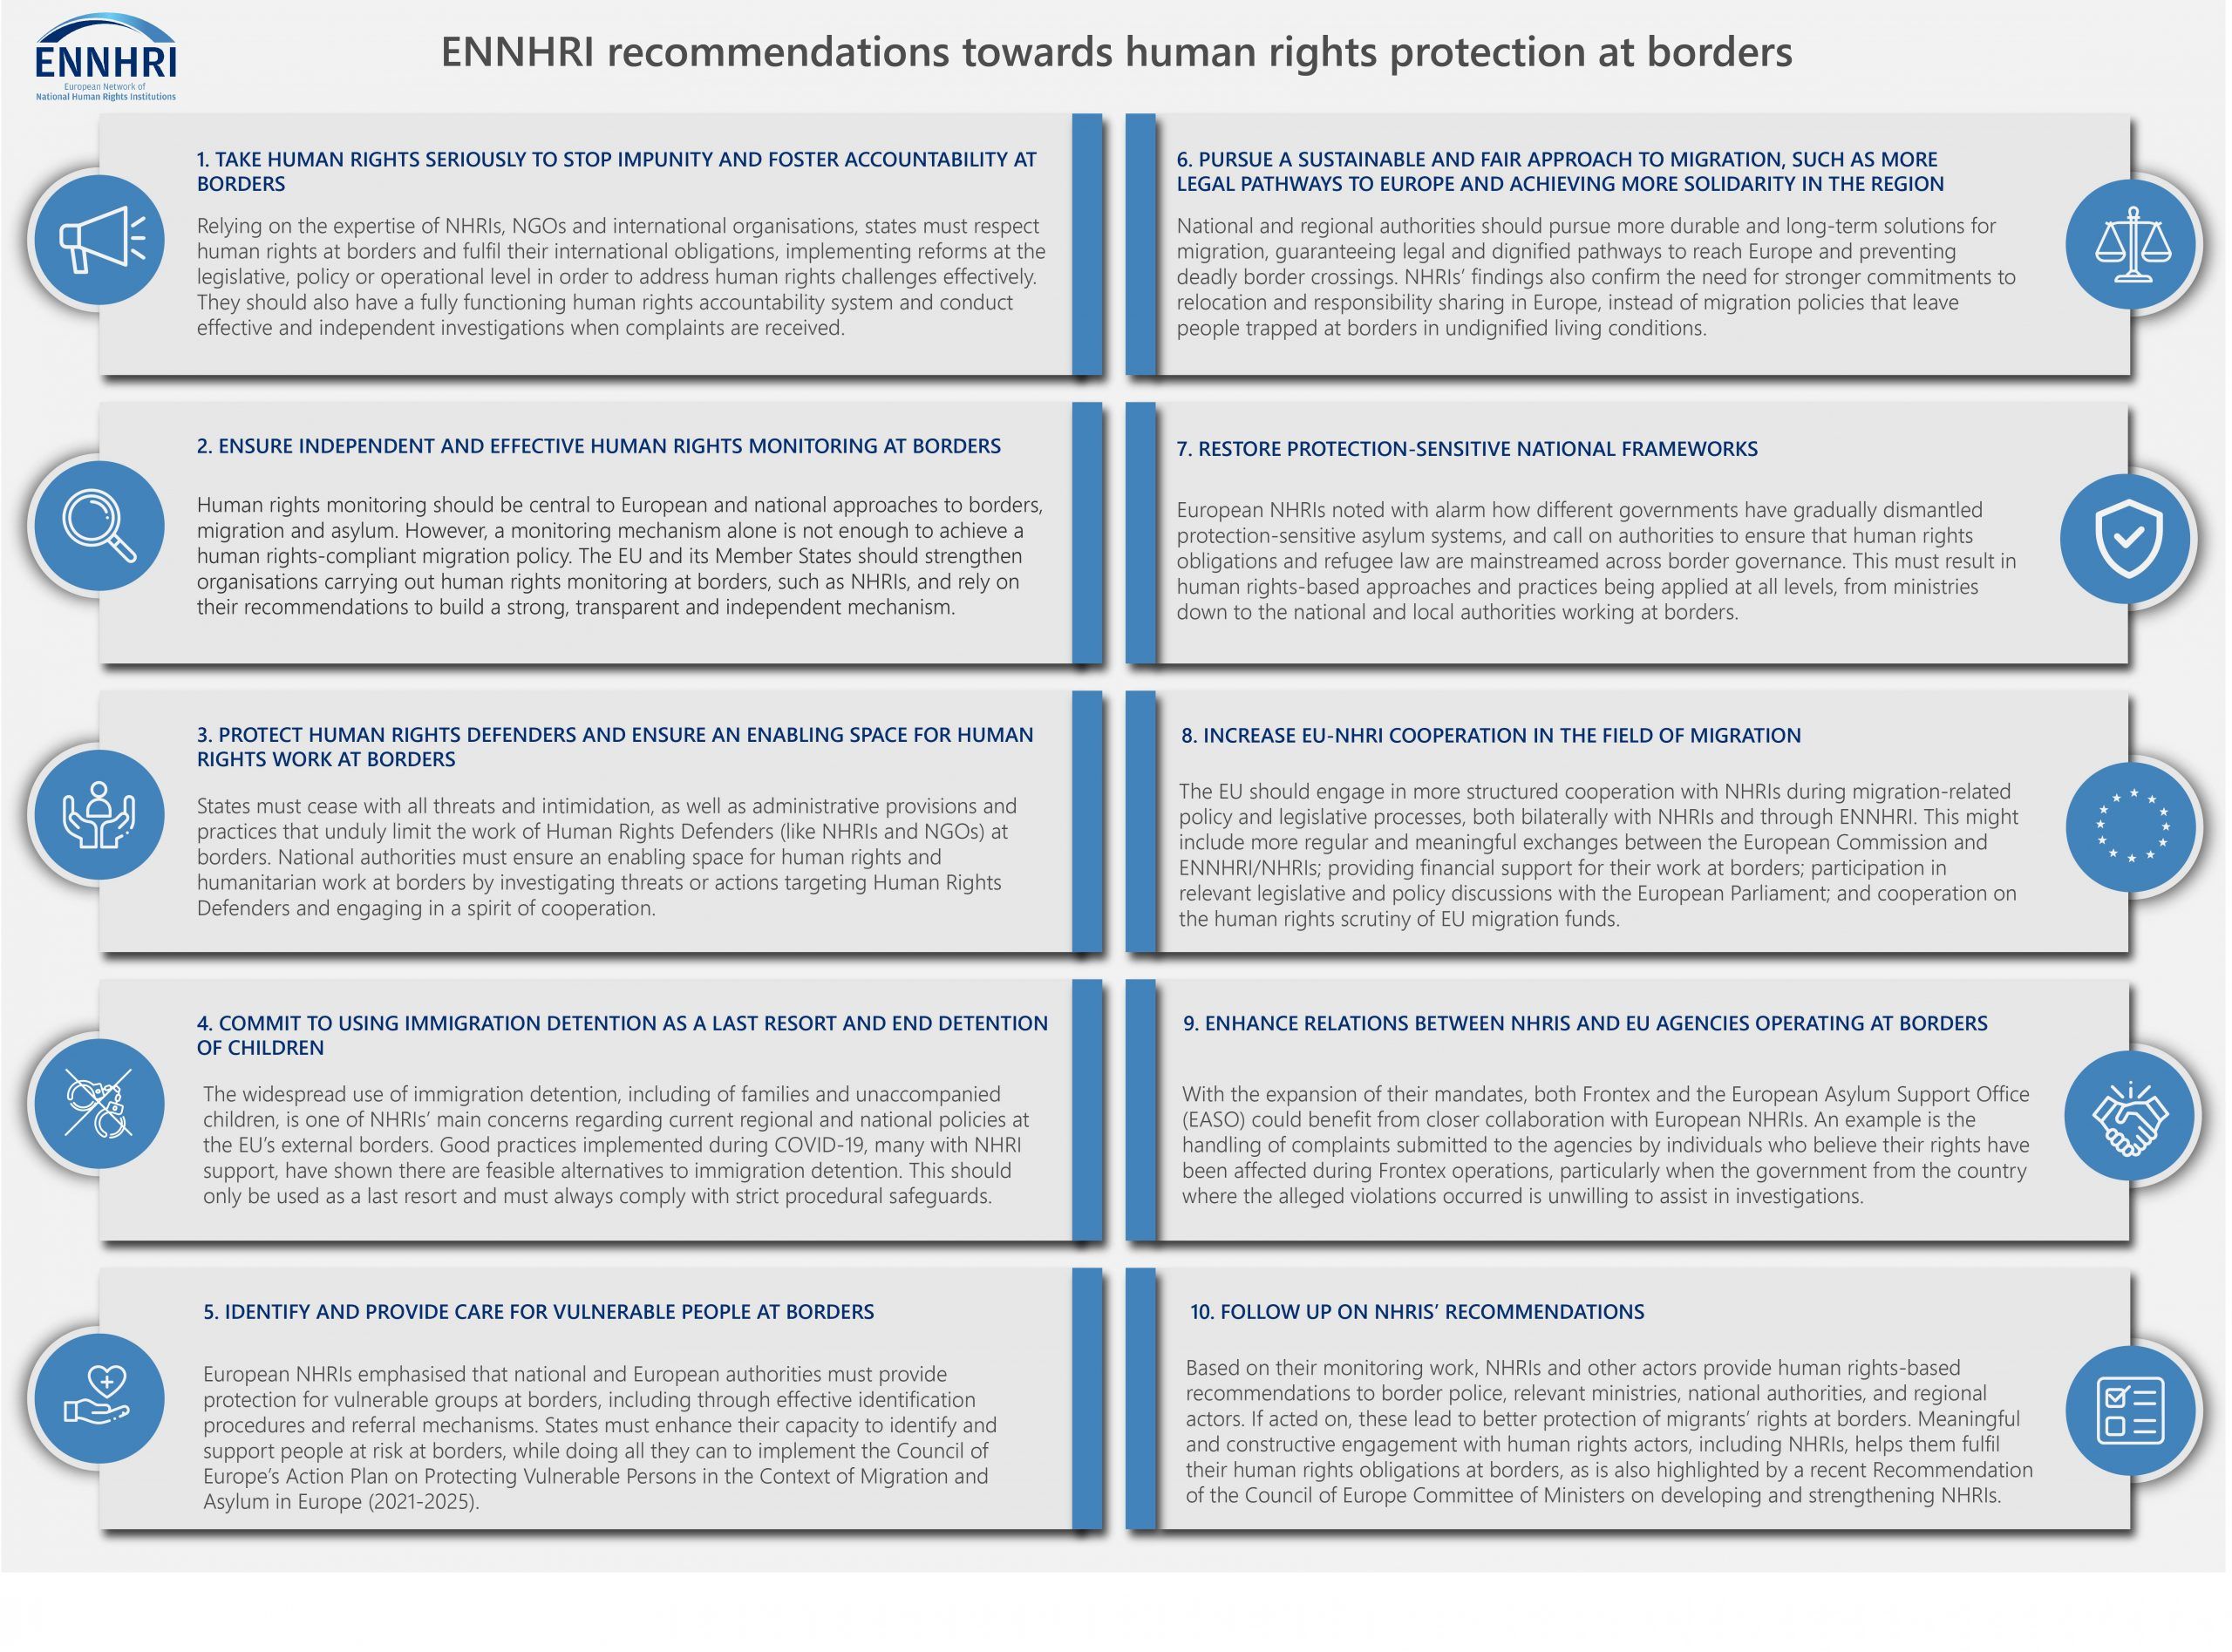 Πίνακας: 10 συστάσεις του ENNHRI για την προστασία των δικαιωμάτων των μεταναστών στα σύνορα